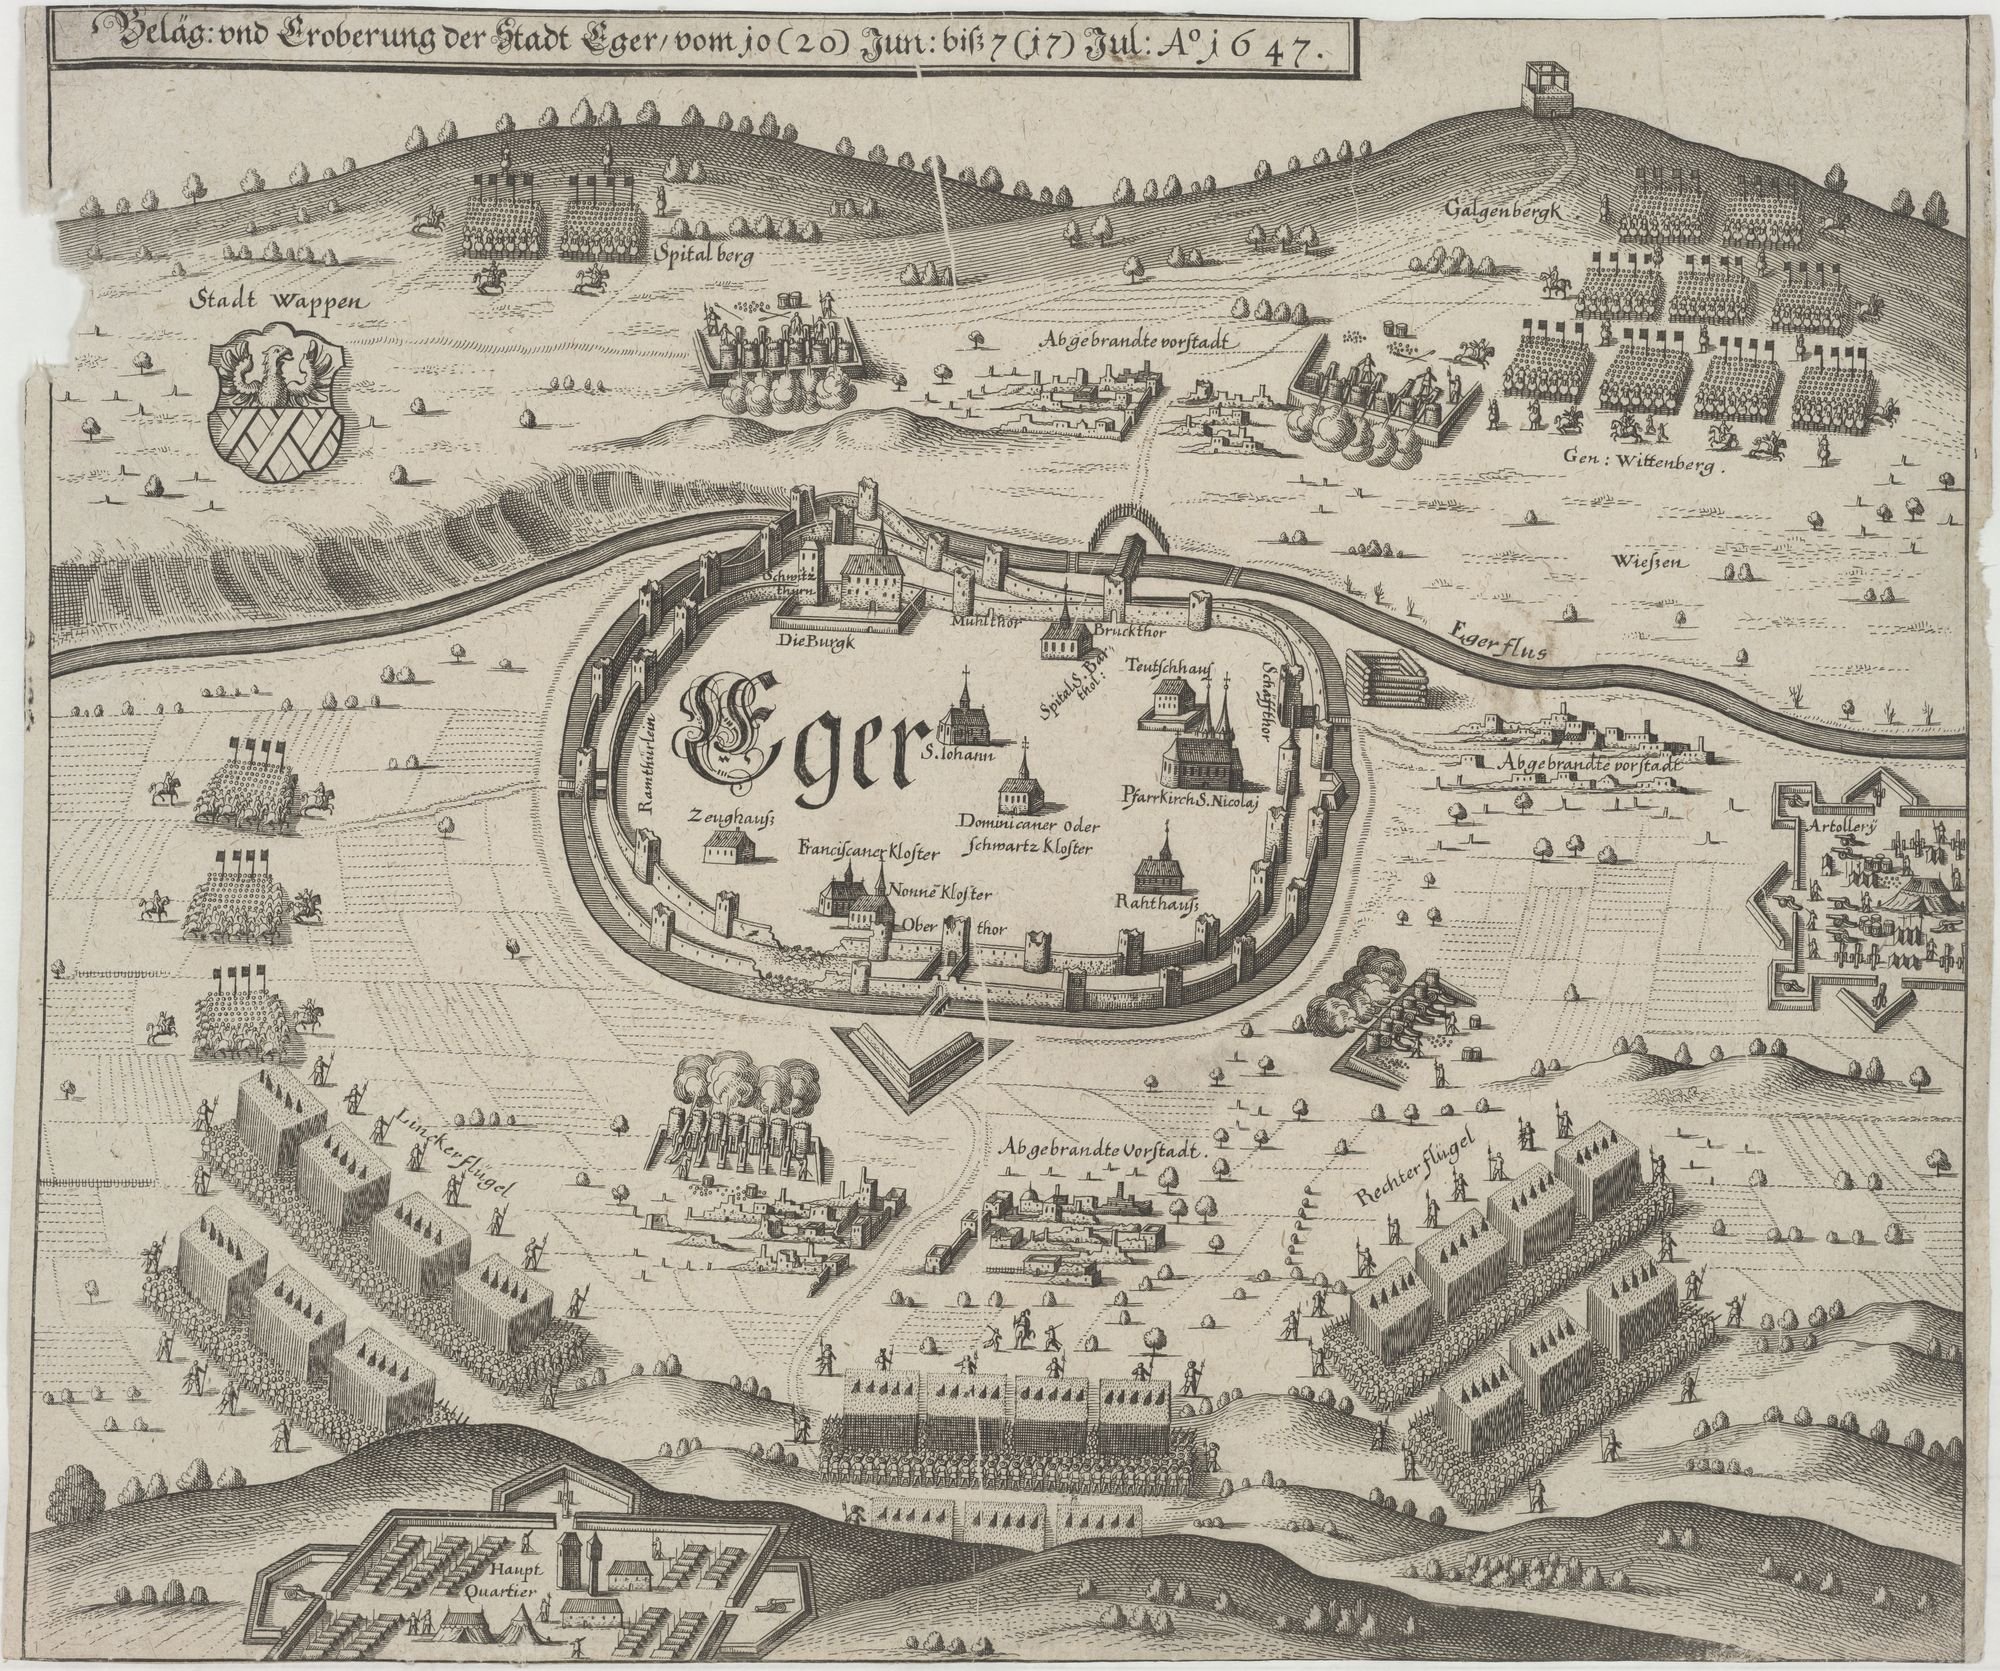 Beläg: und Eroberung der Stadt Eger/ vom i0 (20) Jun: biß 7 (i7) Jul: Ao 1647. (Kulturstiftung Sachsen-Anhalt Public Domain Mark)